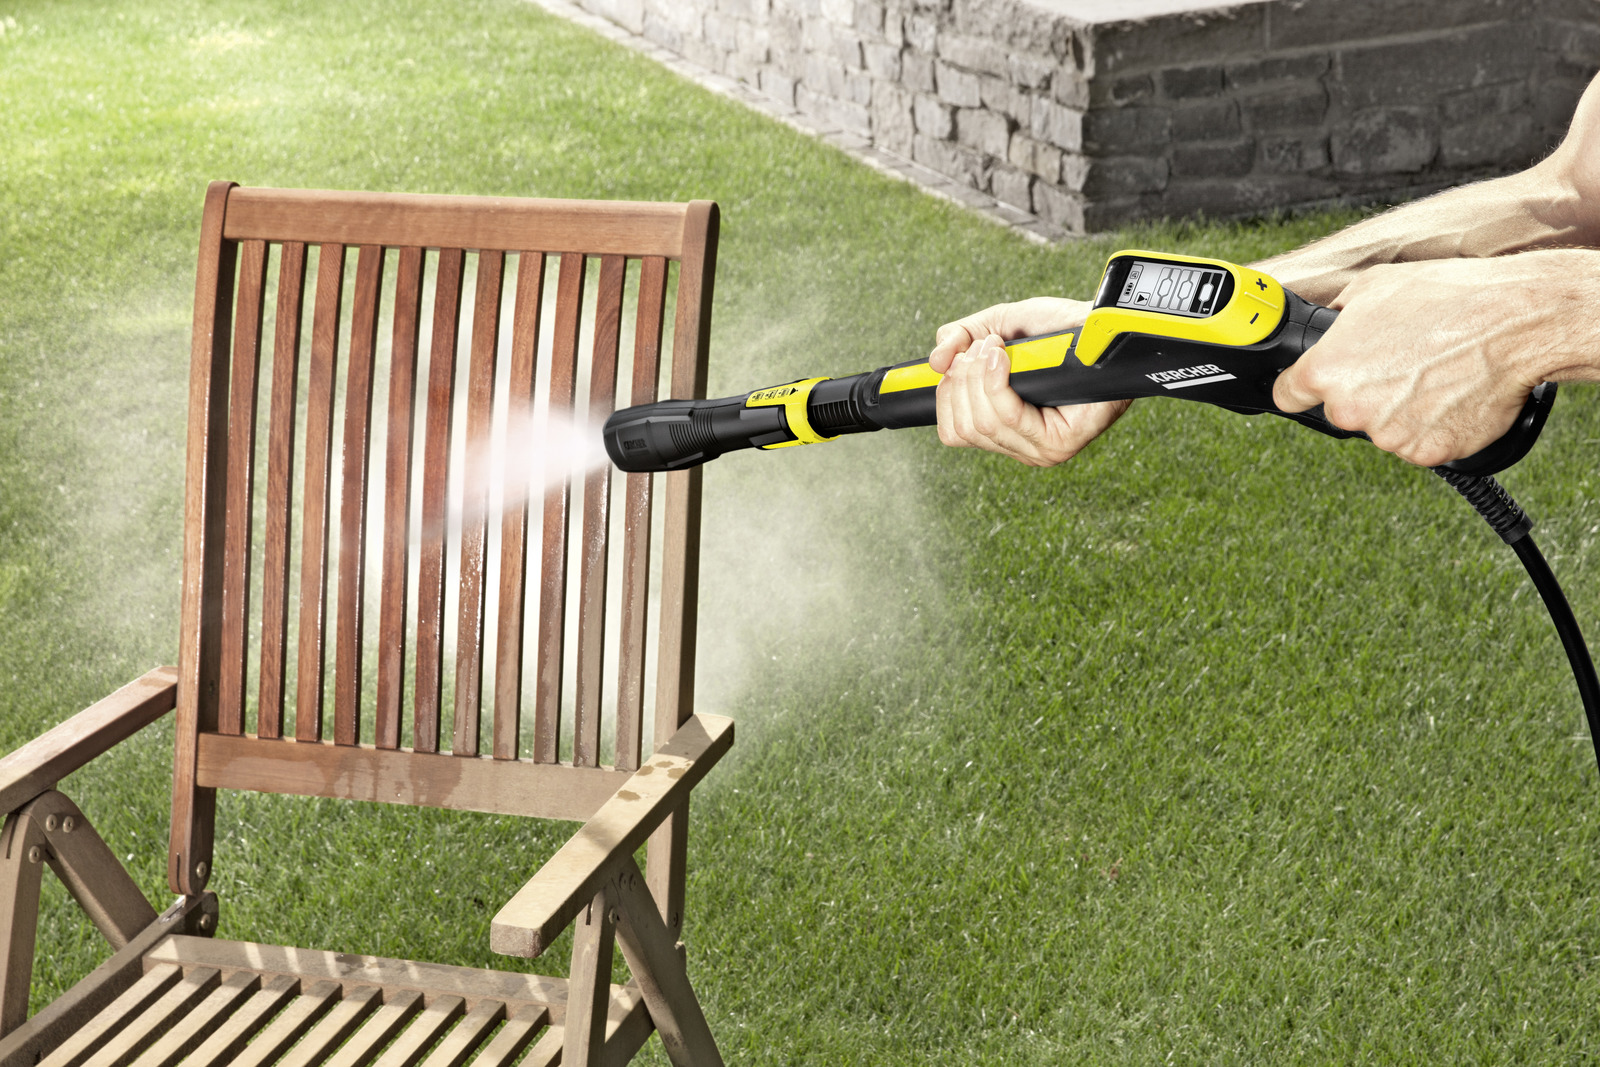 Myjka wysokociśnieniowa Karcher K 5 Premium Smart Control - zastosowanie w ogrodzie